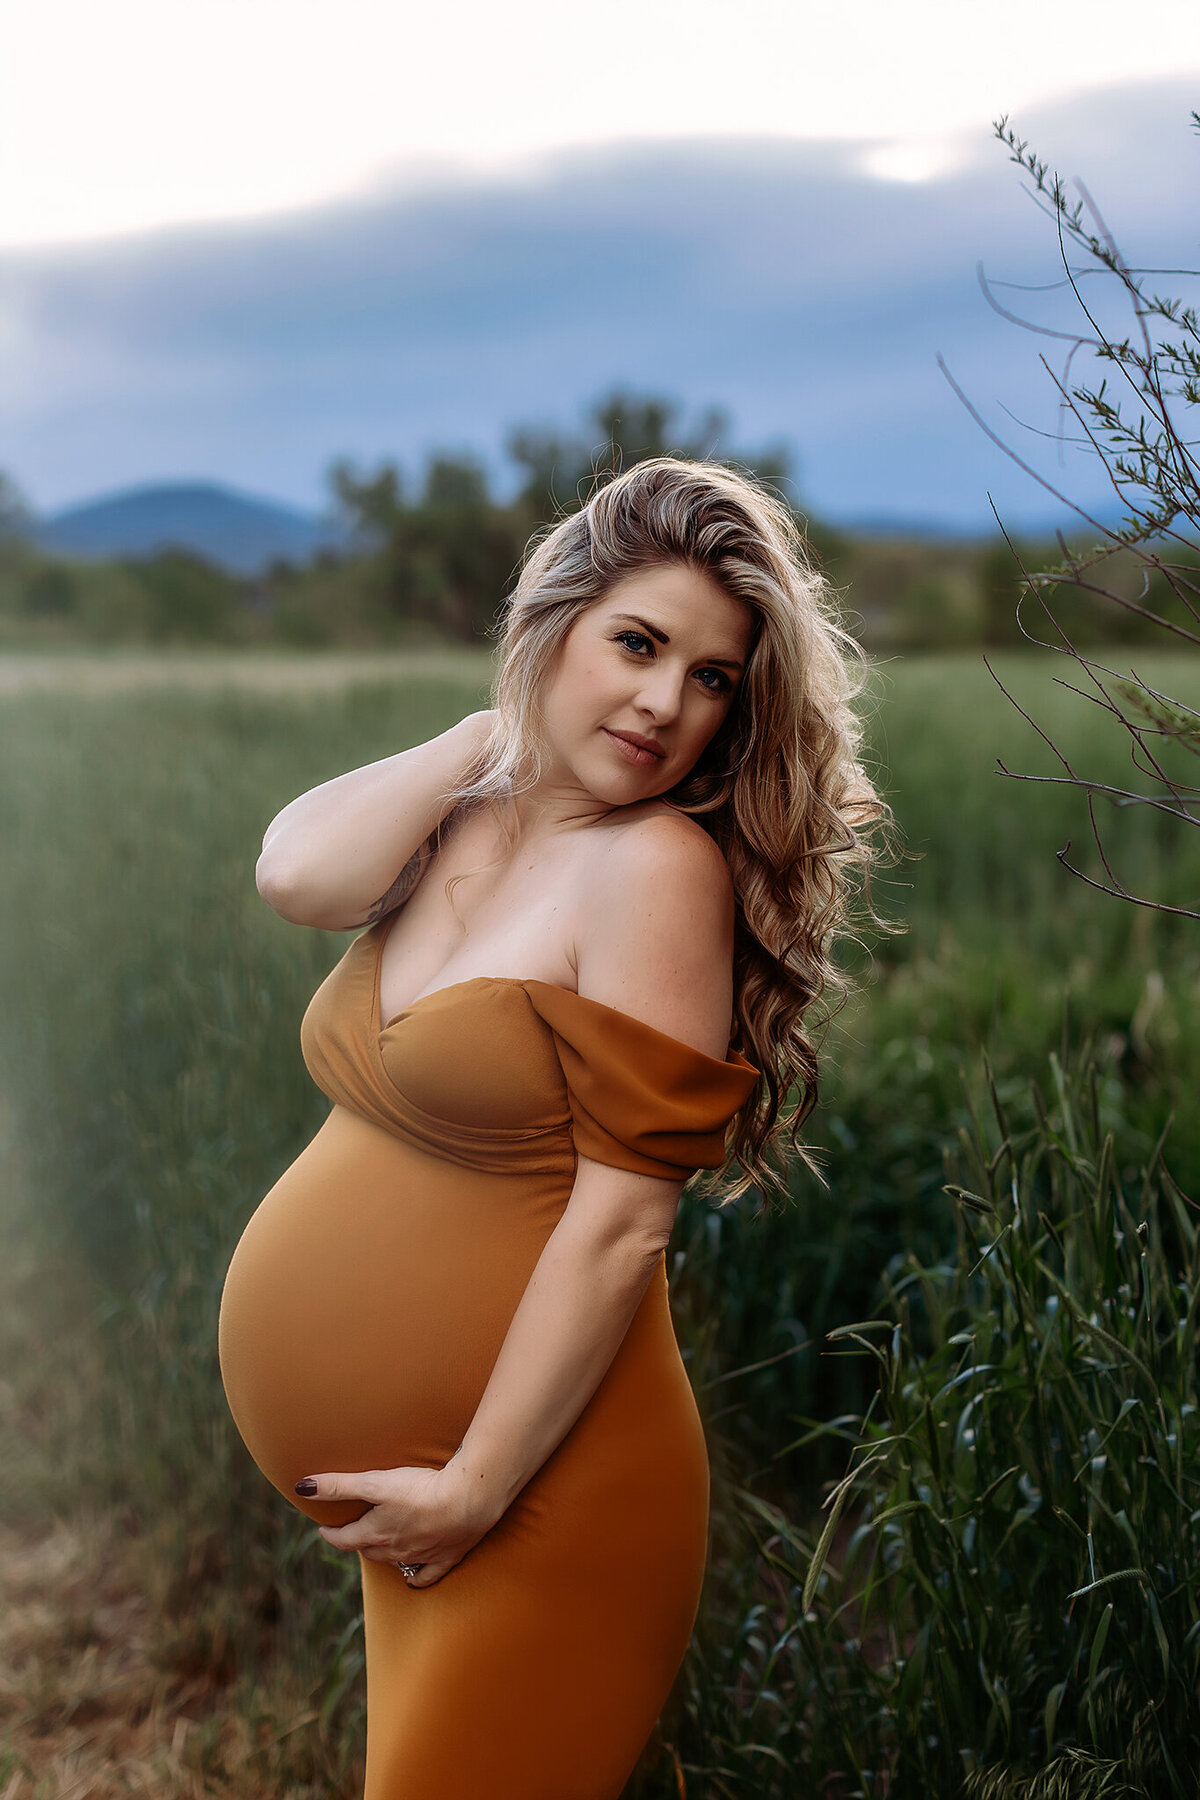 denver maternityphotographer